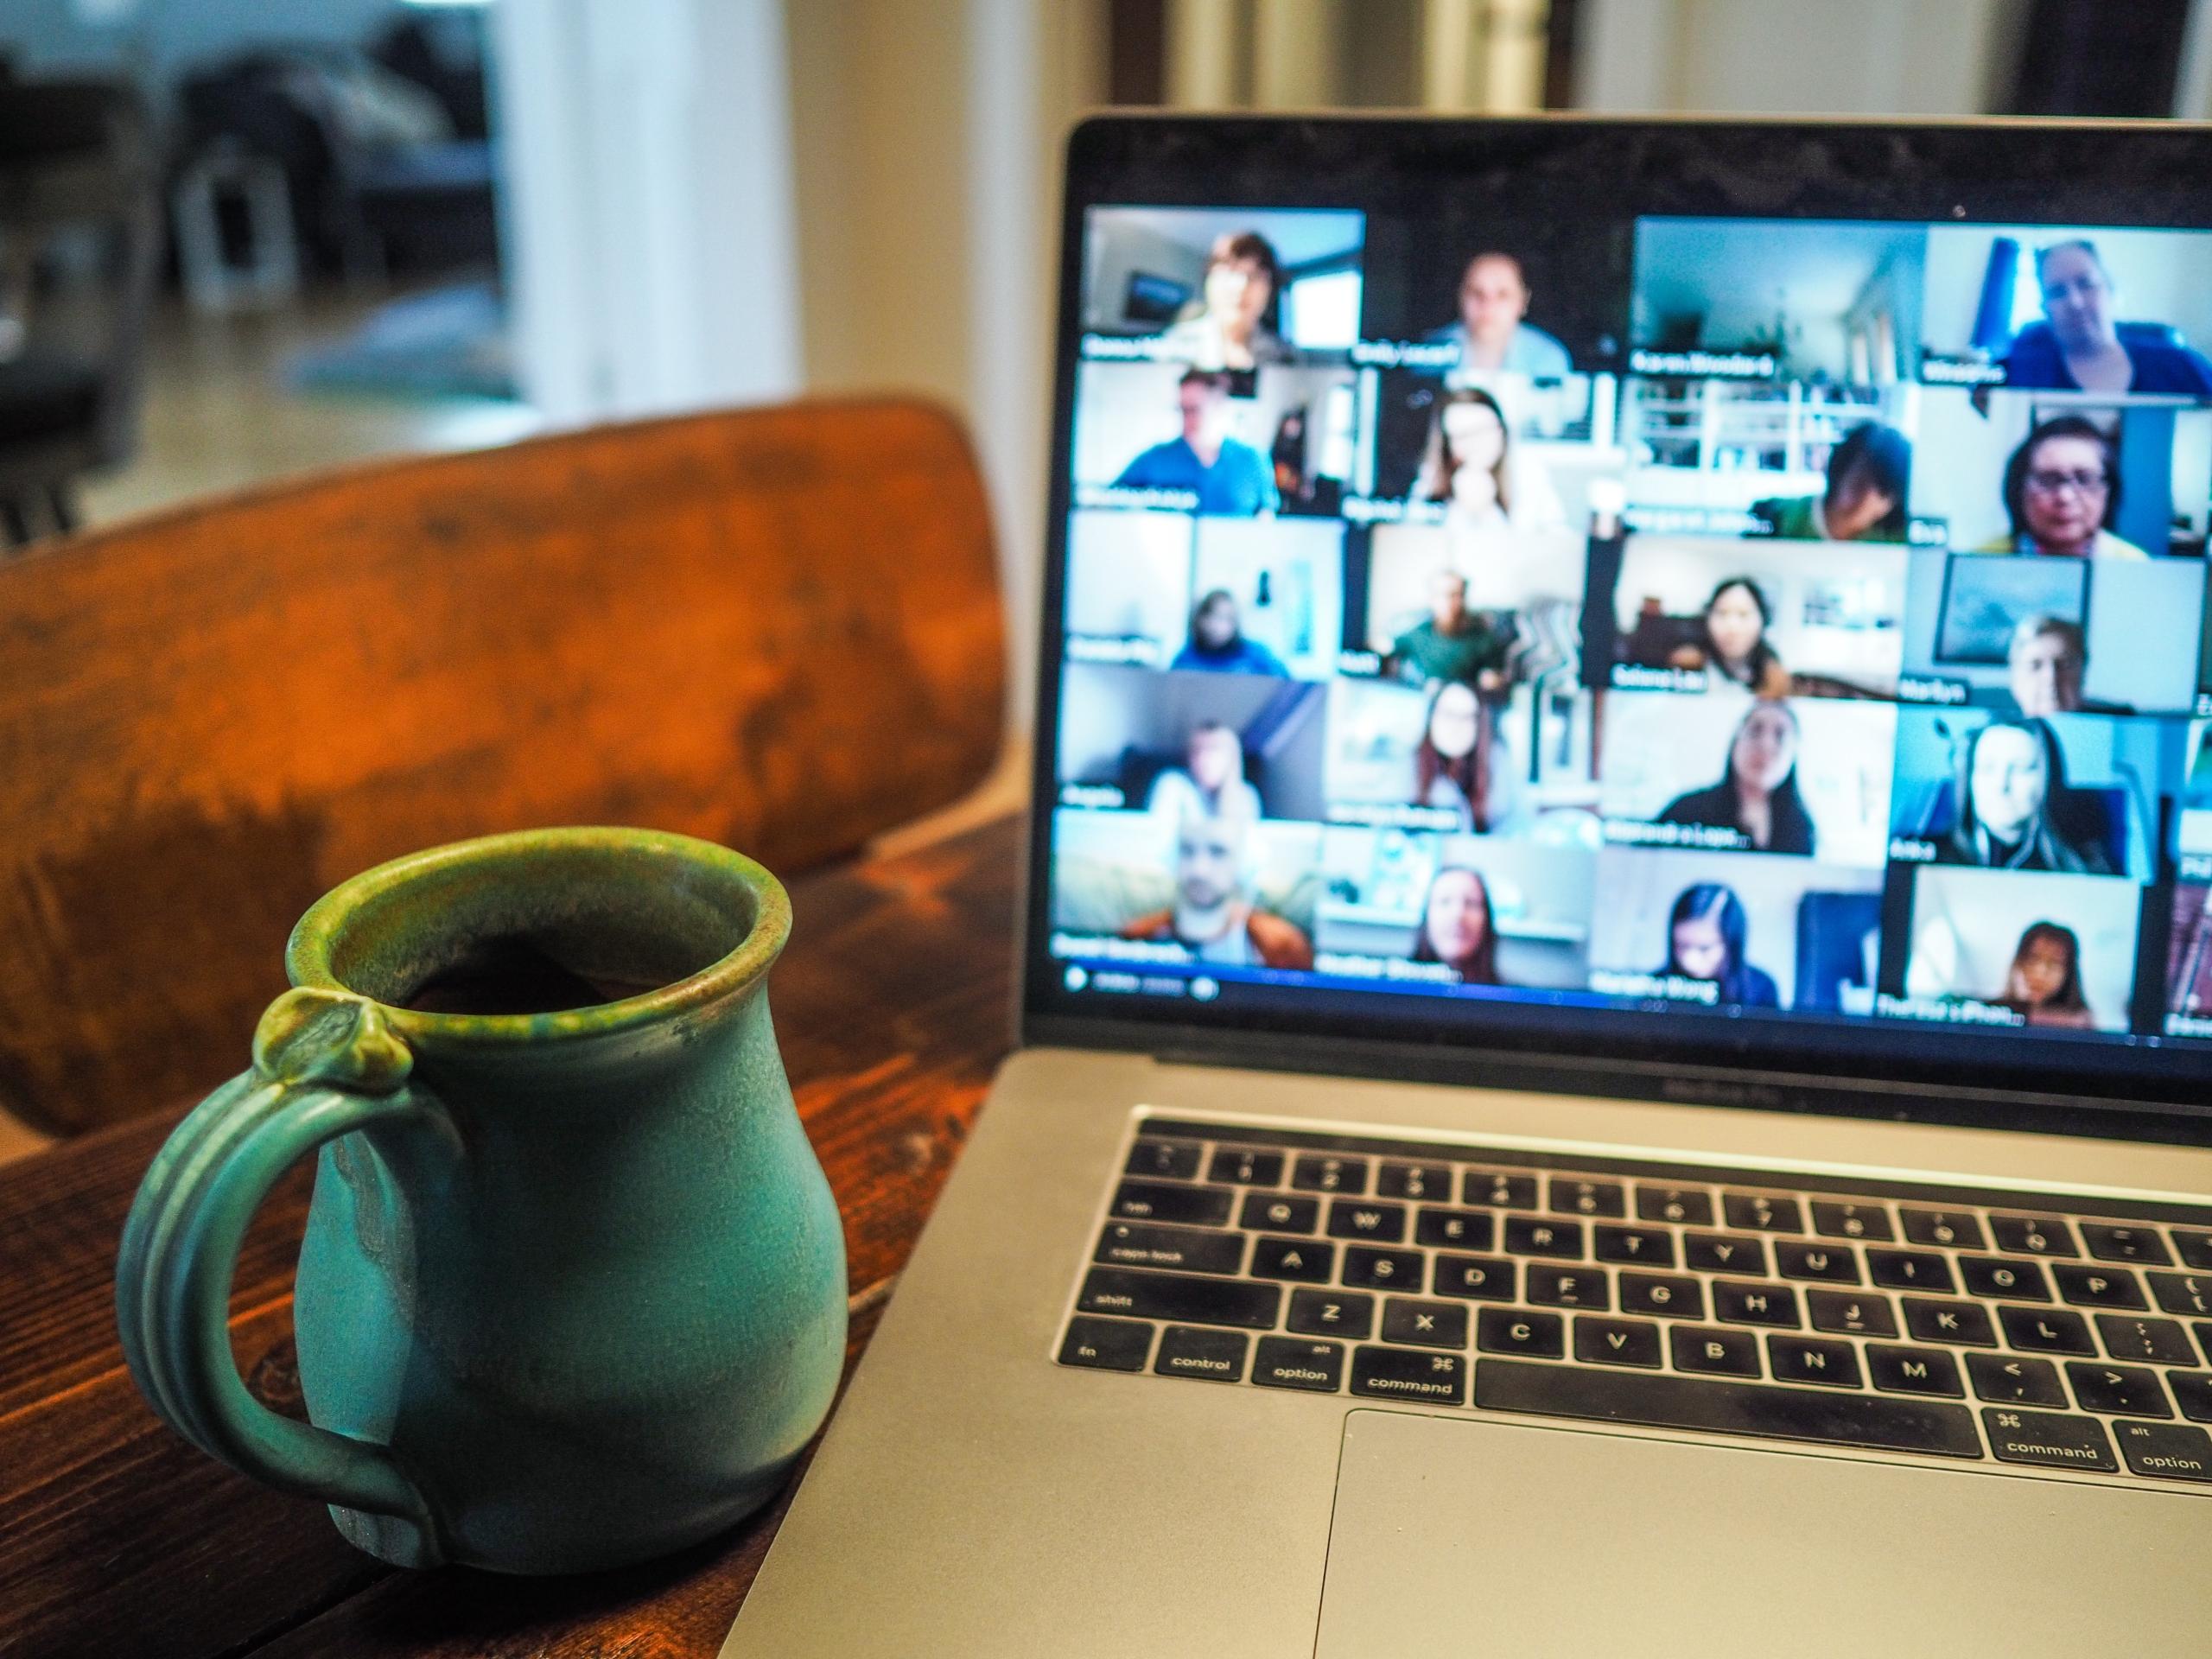 Laptop auf einem Holztisch, eine Tasse daneben, auf dem Bildschirm ein Videocall mit vielen Menschen